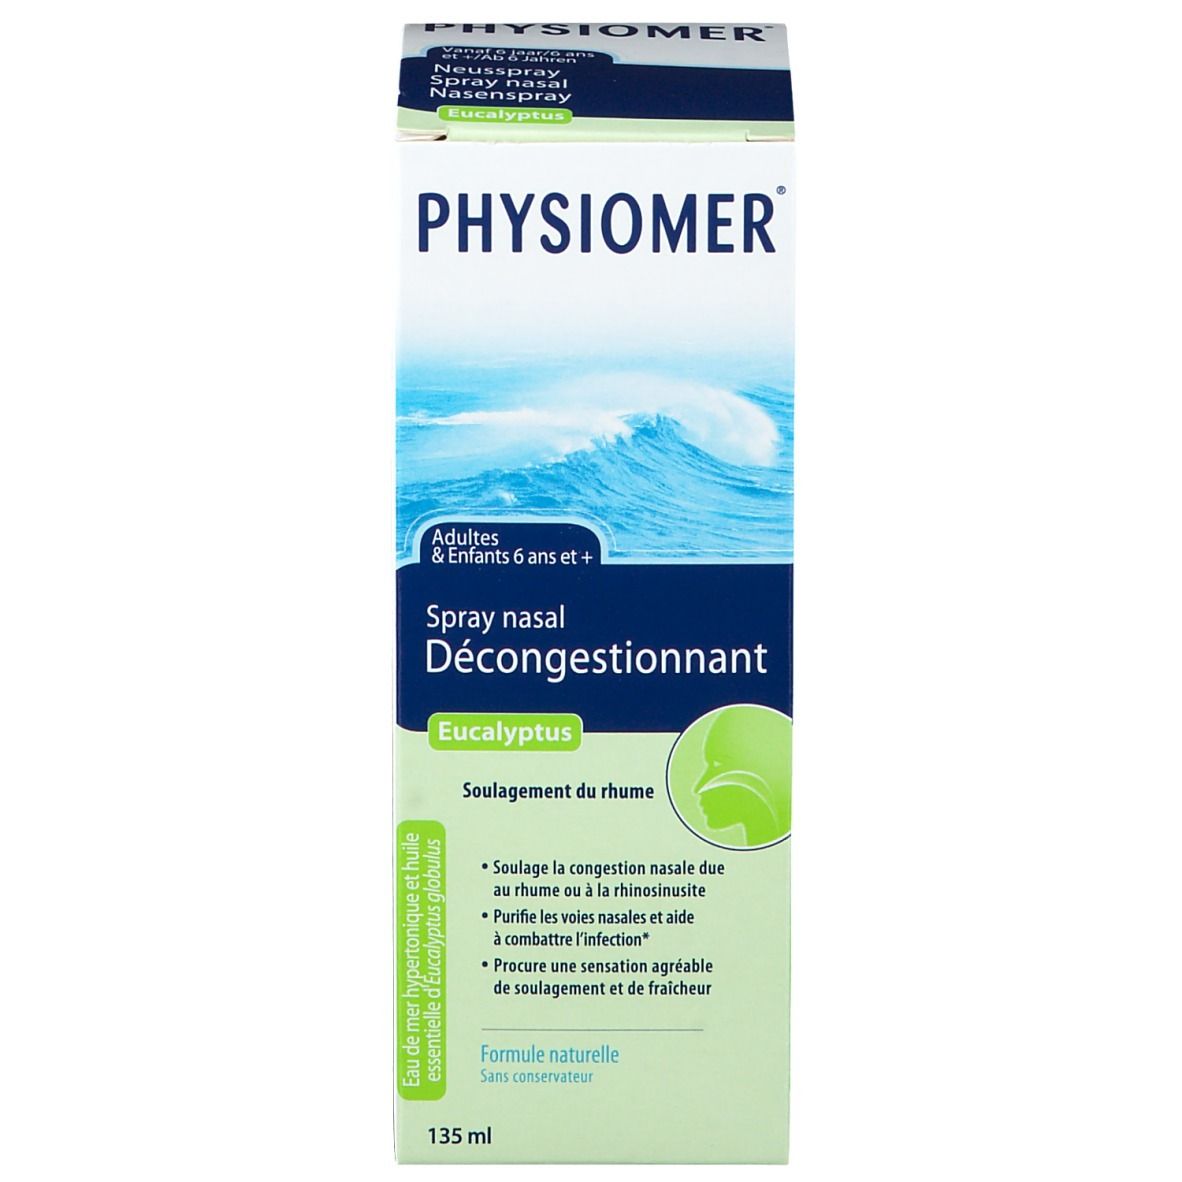 Careway Nasal Spray Décongestionnant pharmacie en ligne, Lloydspharma –  LloydsPharma